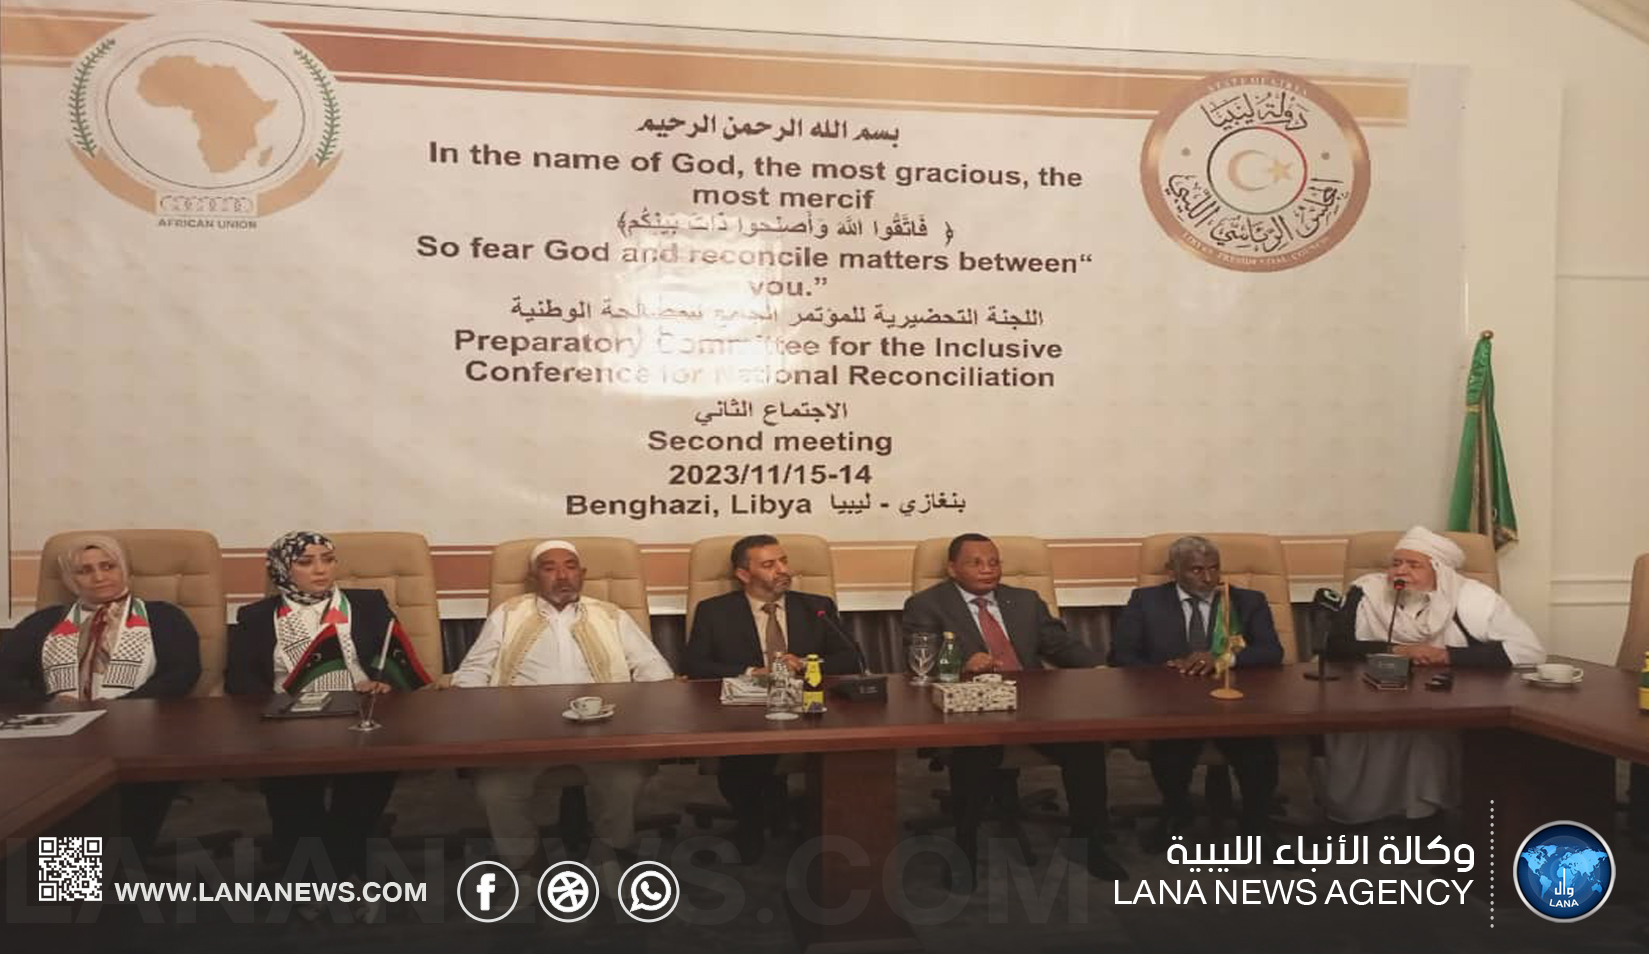 اللجنة التحضيرية للمؤتمر الجامع للمصالحة : المصالحة تمثل صمام أمان الاستقرار والسلام في ليبيا